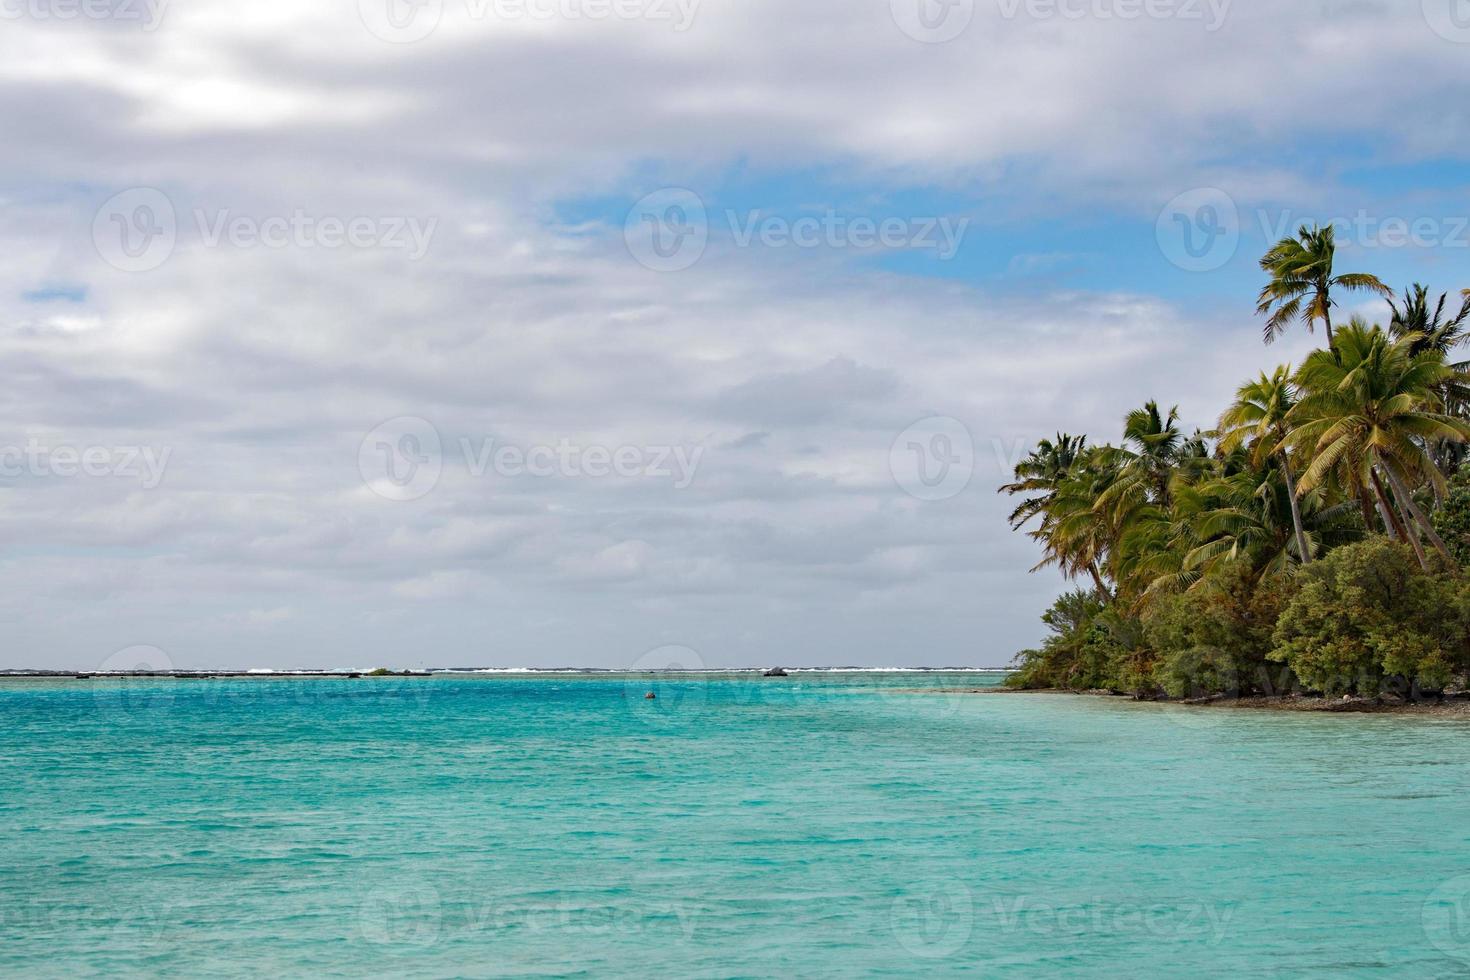 cocotier sur la plage paradisiaque polynésienne photo